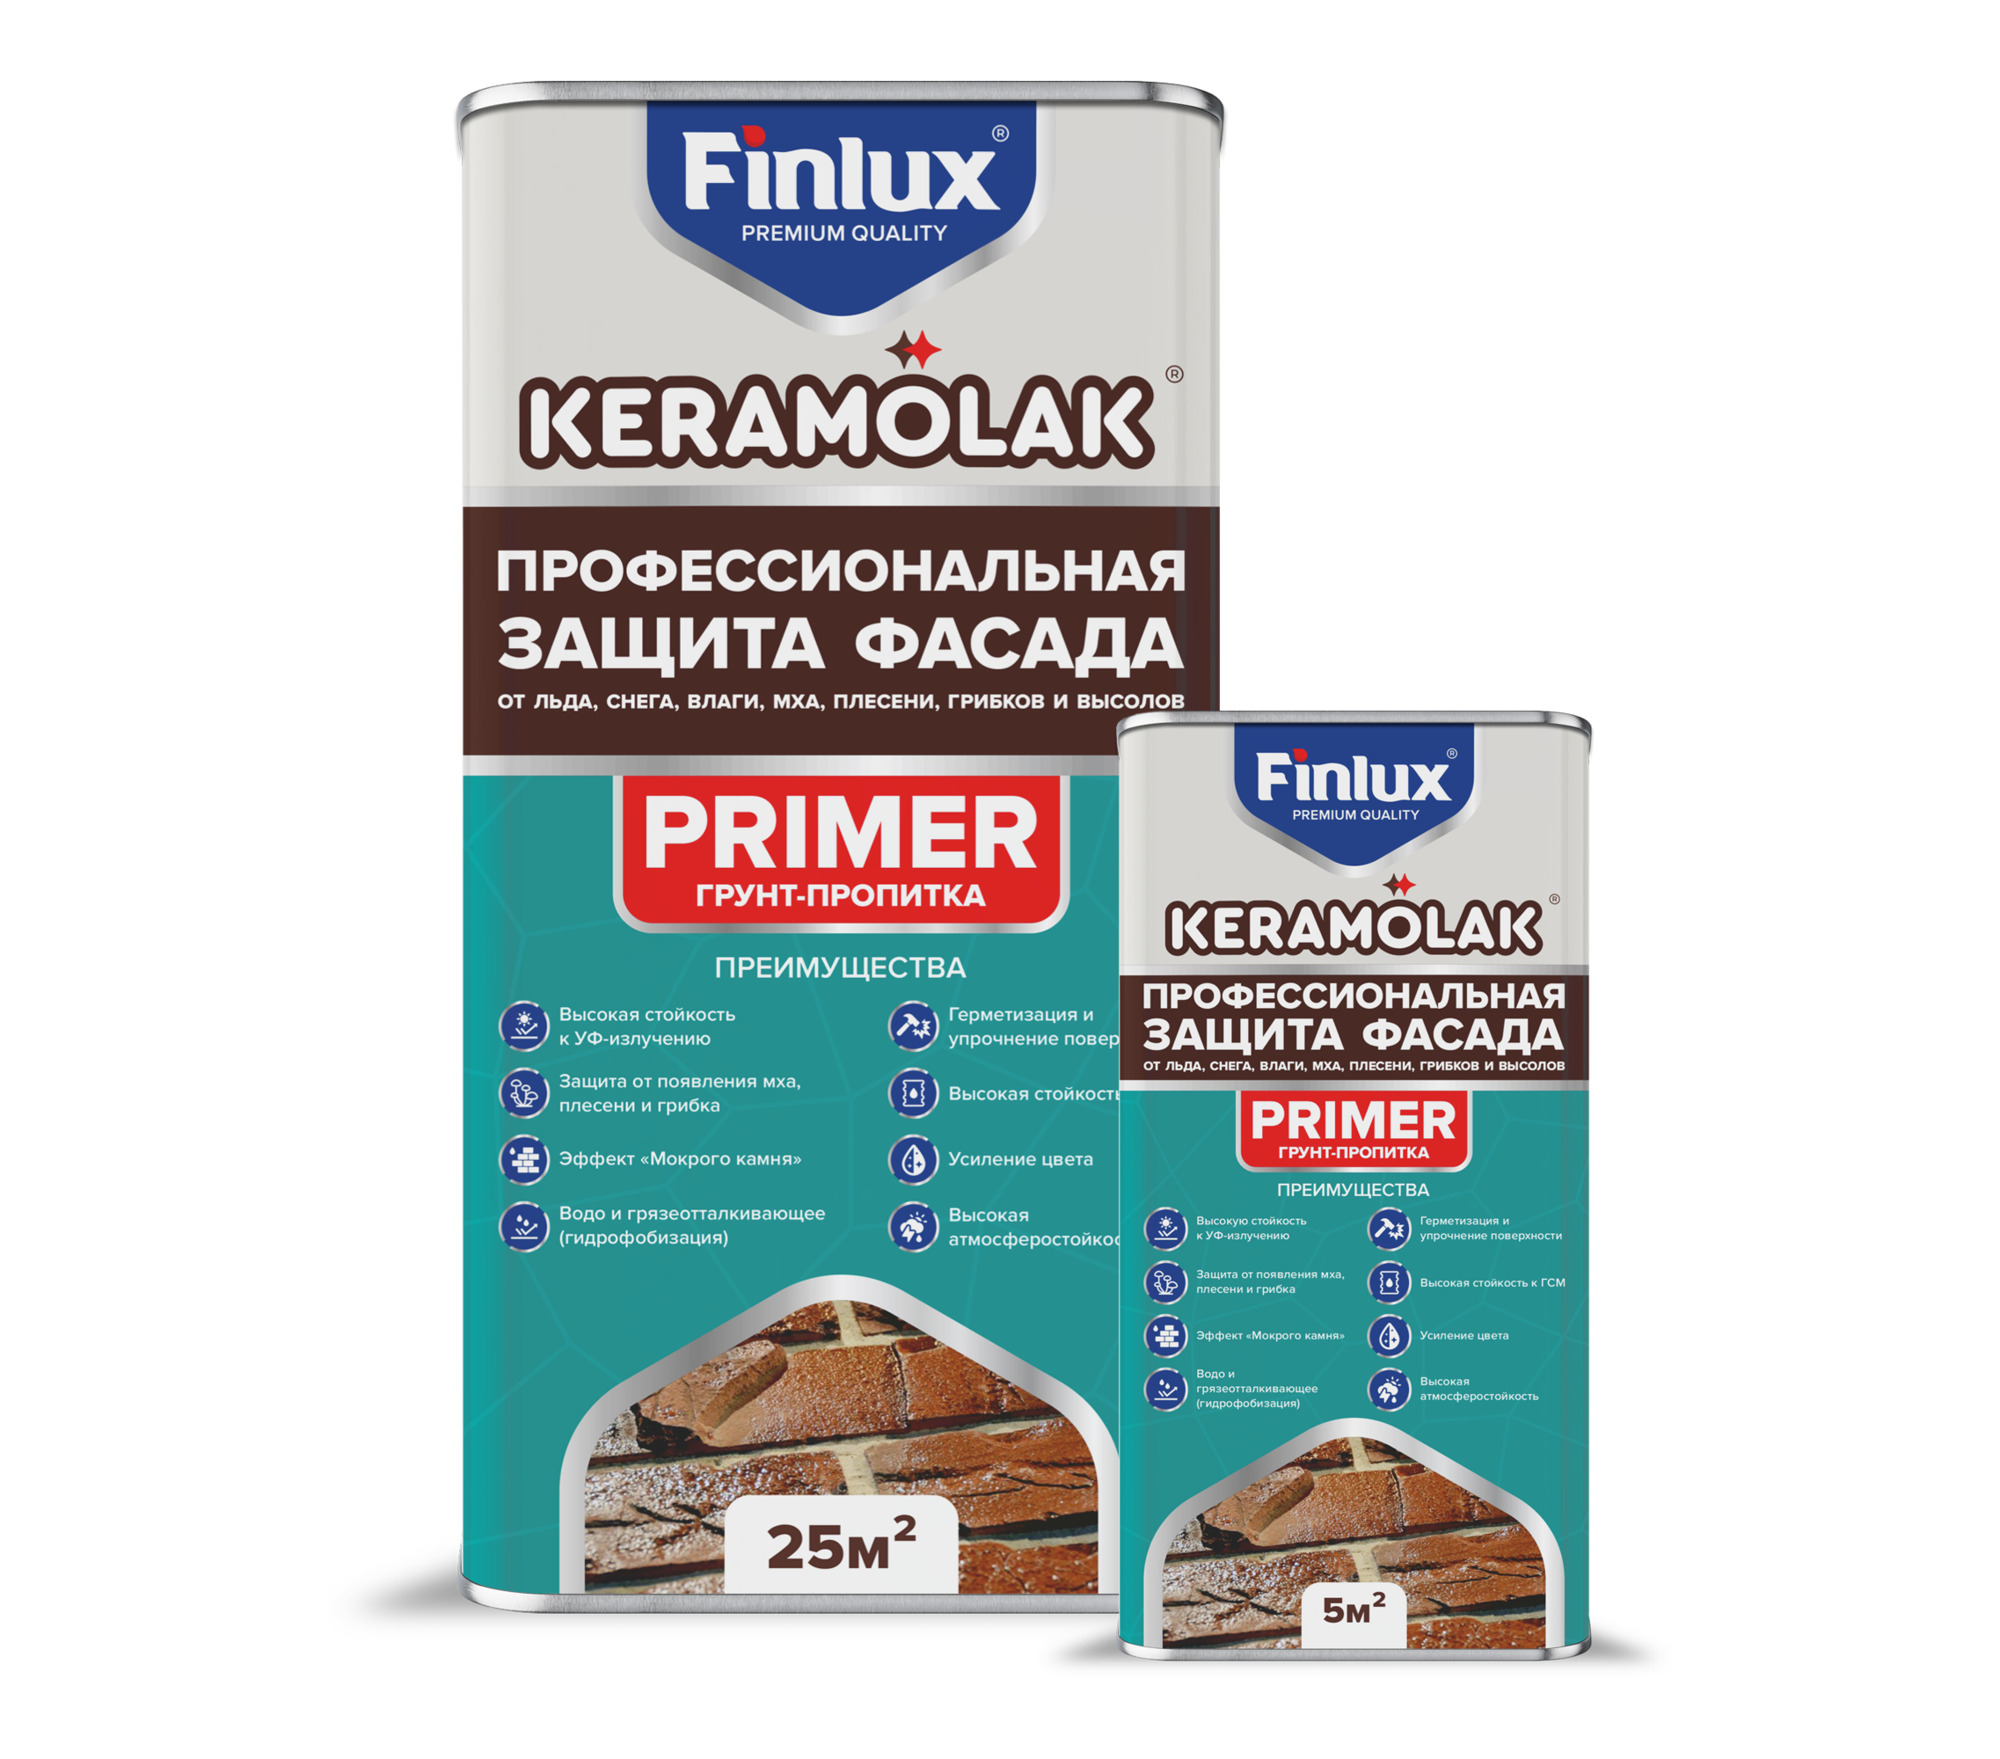 Пропитка для защиты любых фасадов от льда снега воздействия влаги мха плесени и грибков Finlux Keramolak Primer 100 кв.м